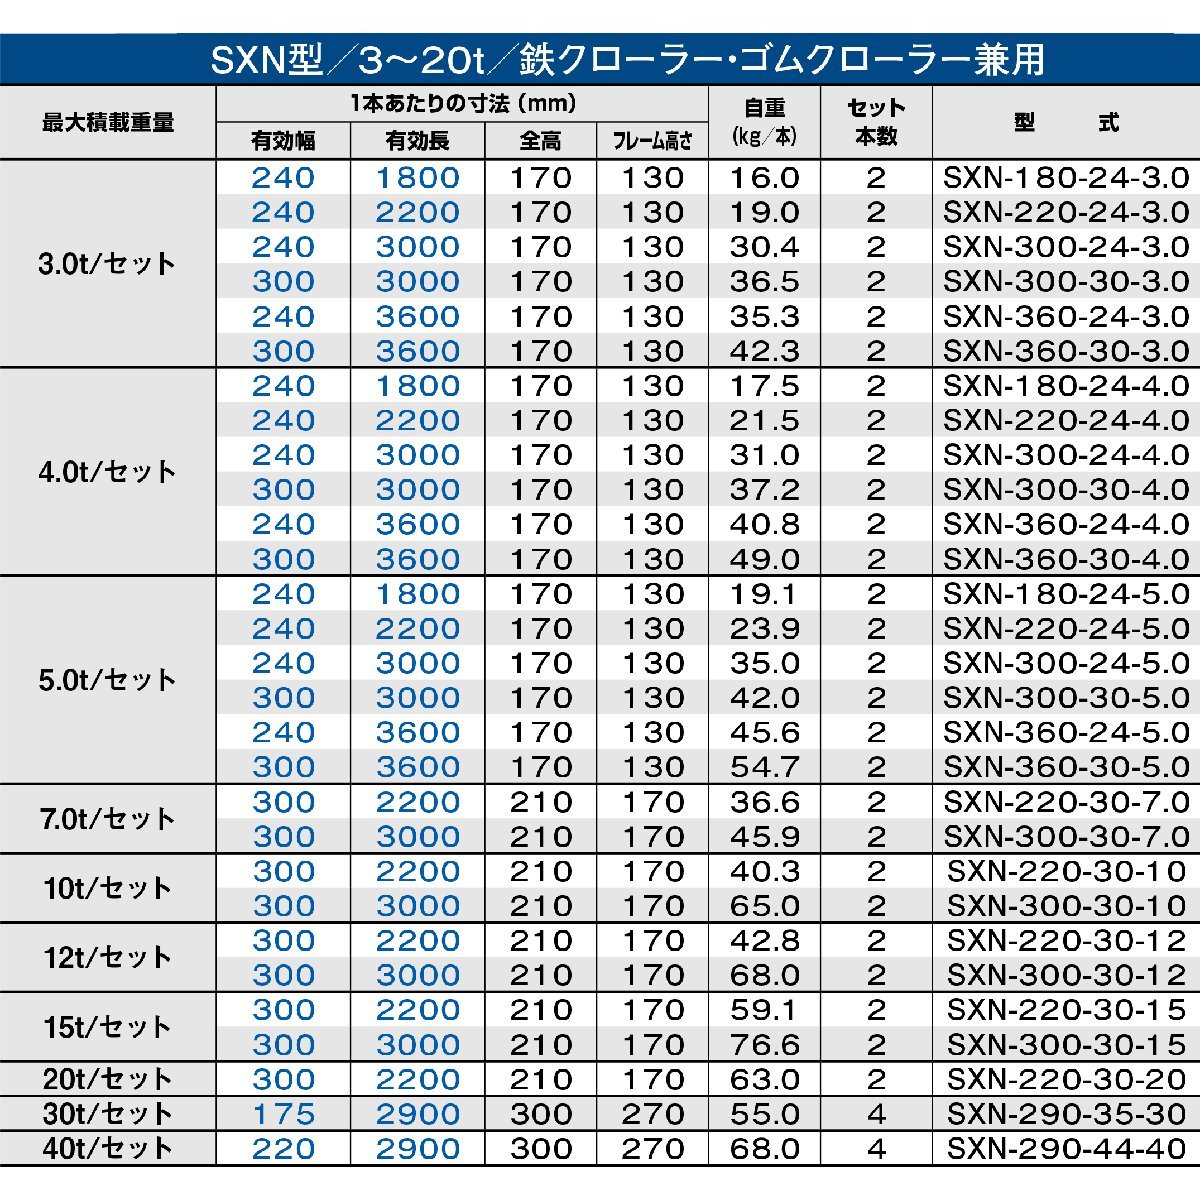 昭和アルミブリッジ SXN-300-24-5.0 5.0t(5t) ツメ式 全長3000/有効幅240(mm) 2本 組_画像3